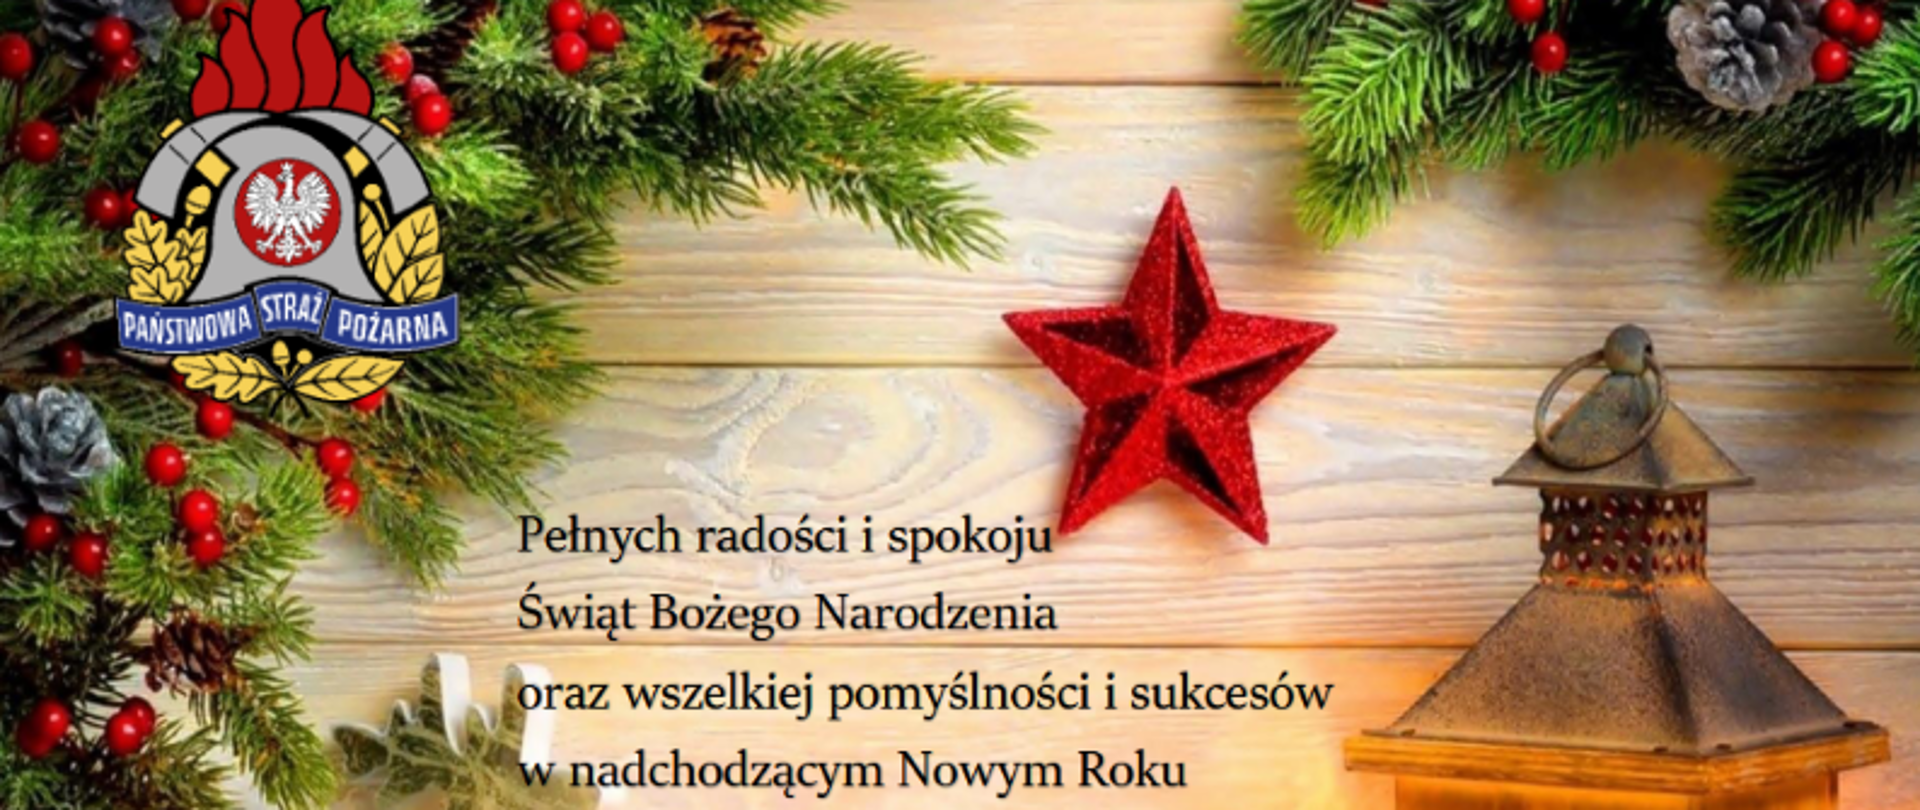 Pełnych radości i spokoju Świąt Bożego Narodzenia oraz wszelkiej pomslnsci i sukcesów w nadchodzącym Nowym Roku życzy Komendant Powiatowy PSP w Kętrzynie wraz z załogą.